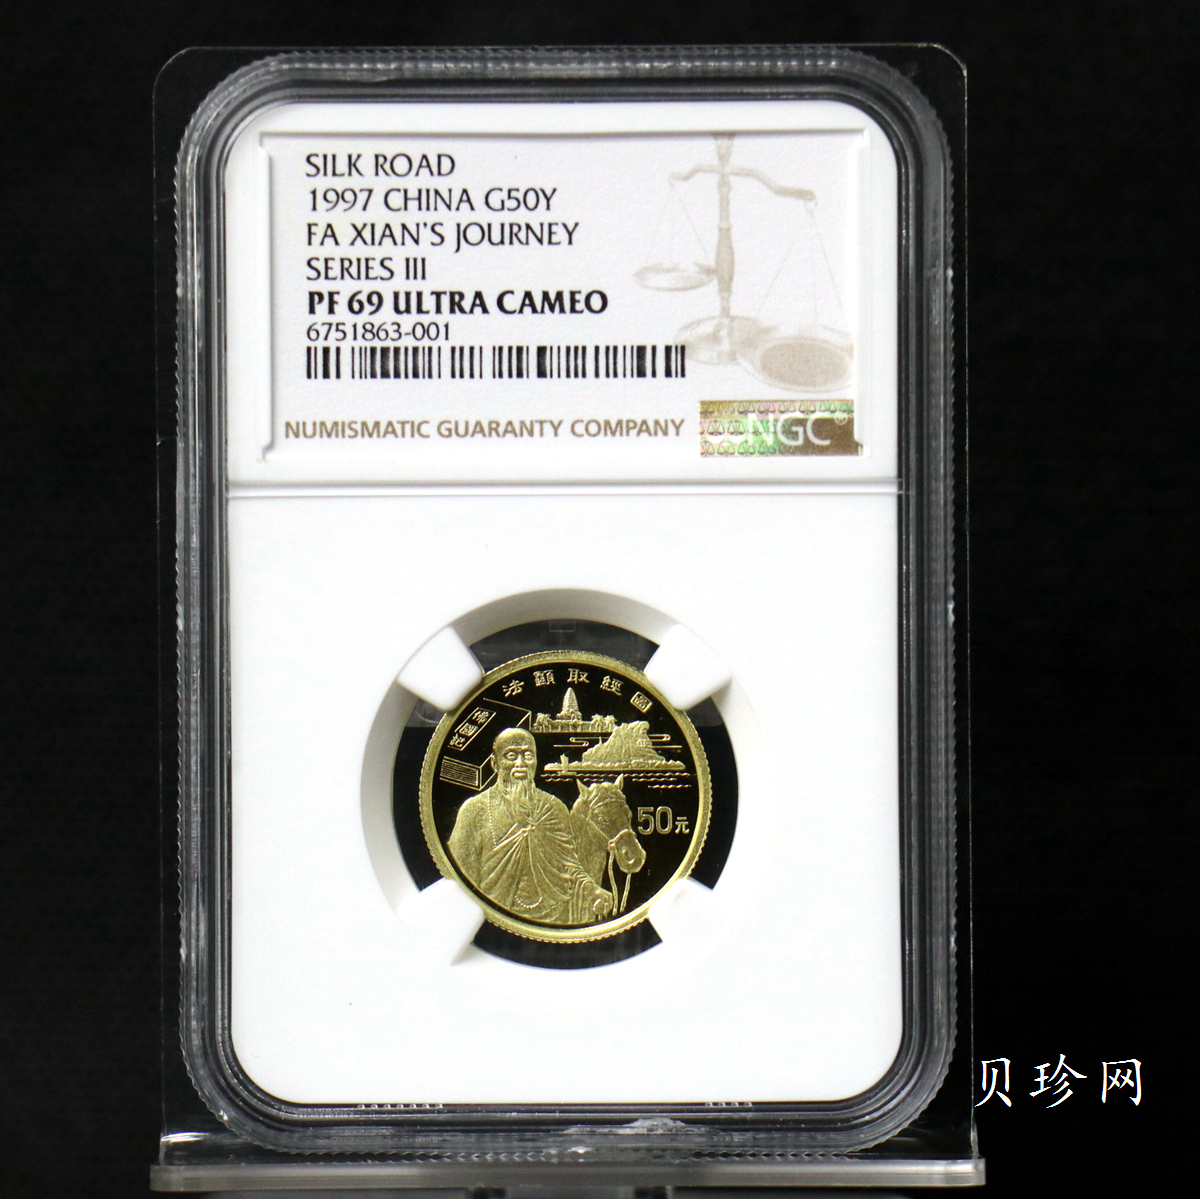 【972001】1997年中国丝绸之路金纪念币（第3组）-法显取经图1/3盎司精制金币